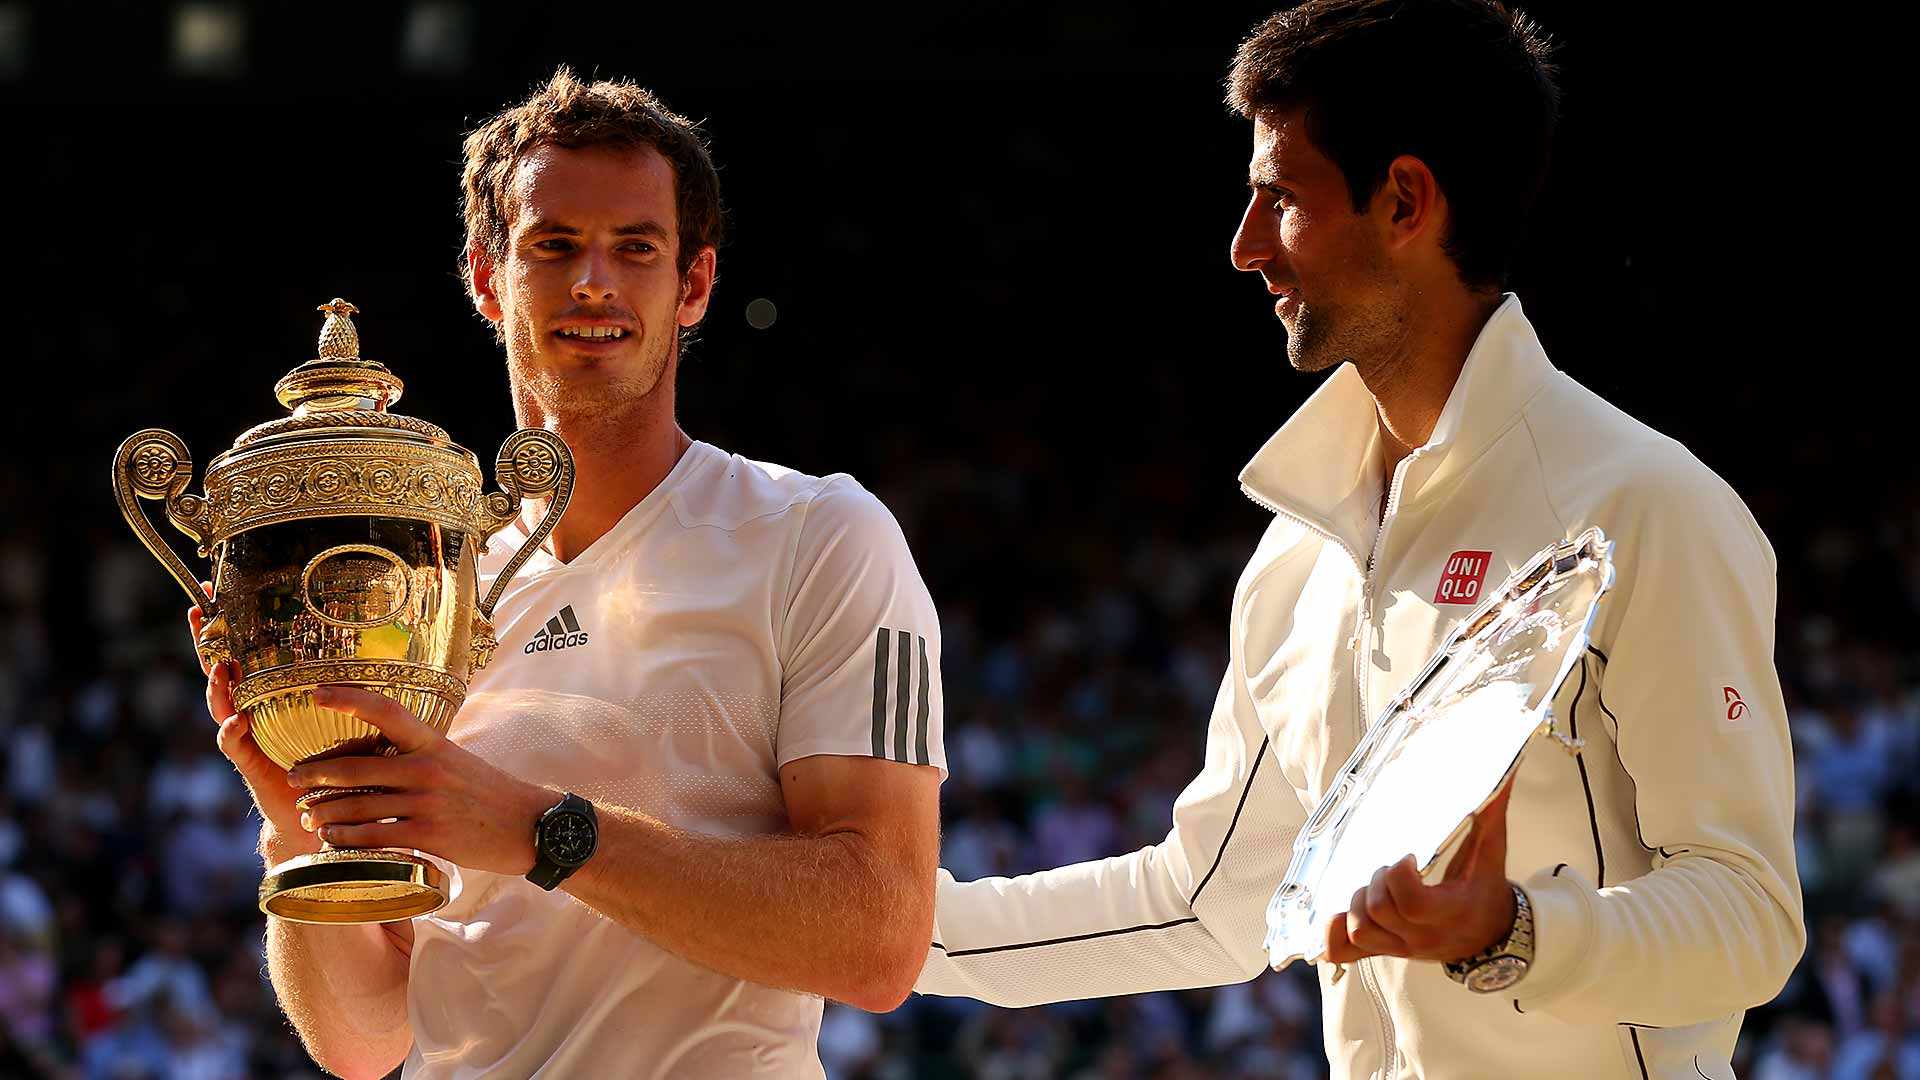 Andy Murray recibe la felicitación de su rival Novak Djokovic tras coronarse en la final de Wimbledon 2013.